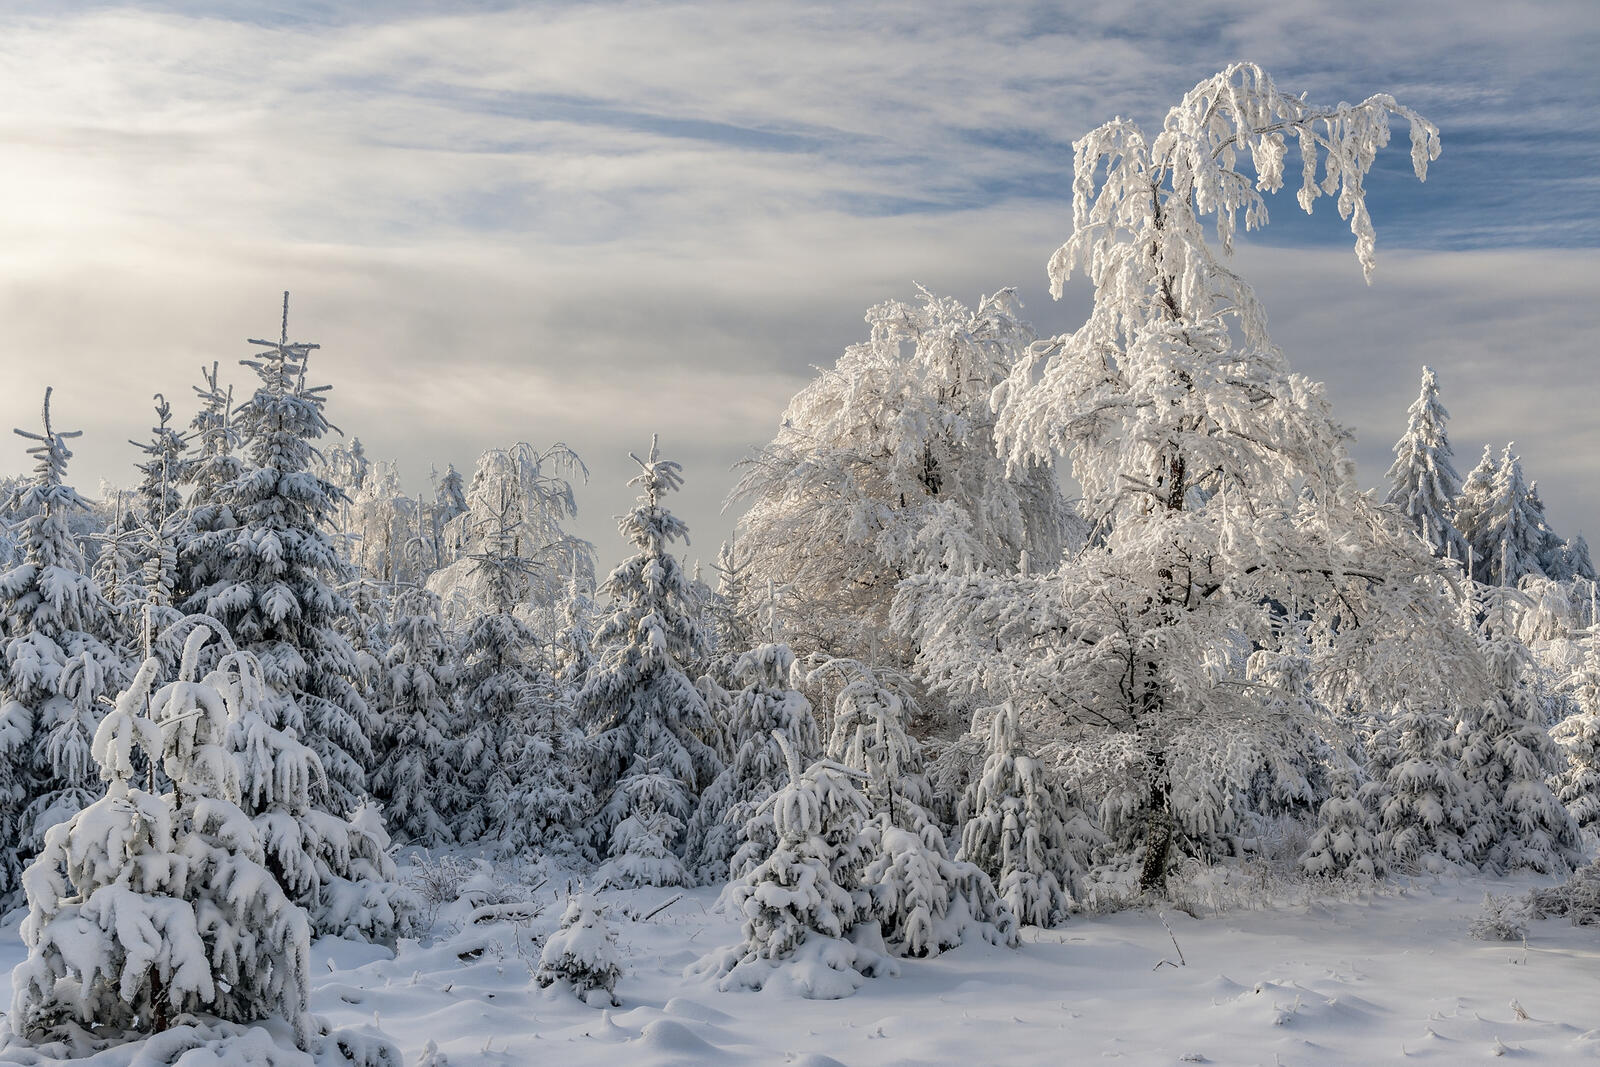 免费照片下载一个关于雪花、冬天的美丽屏保